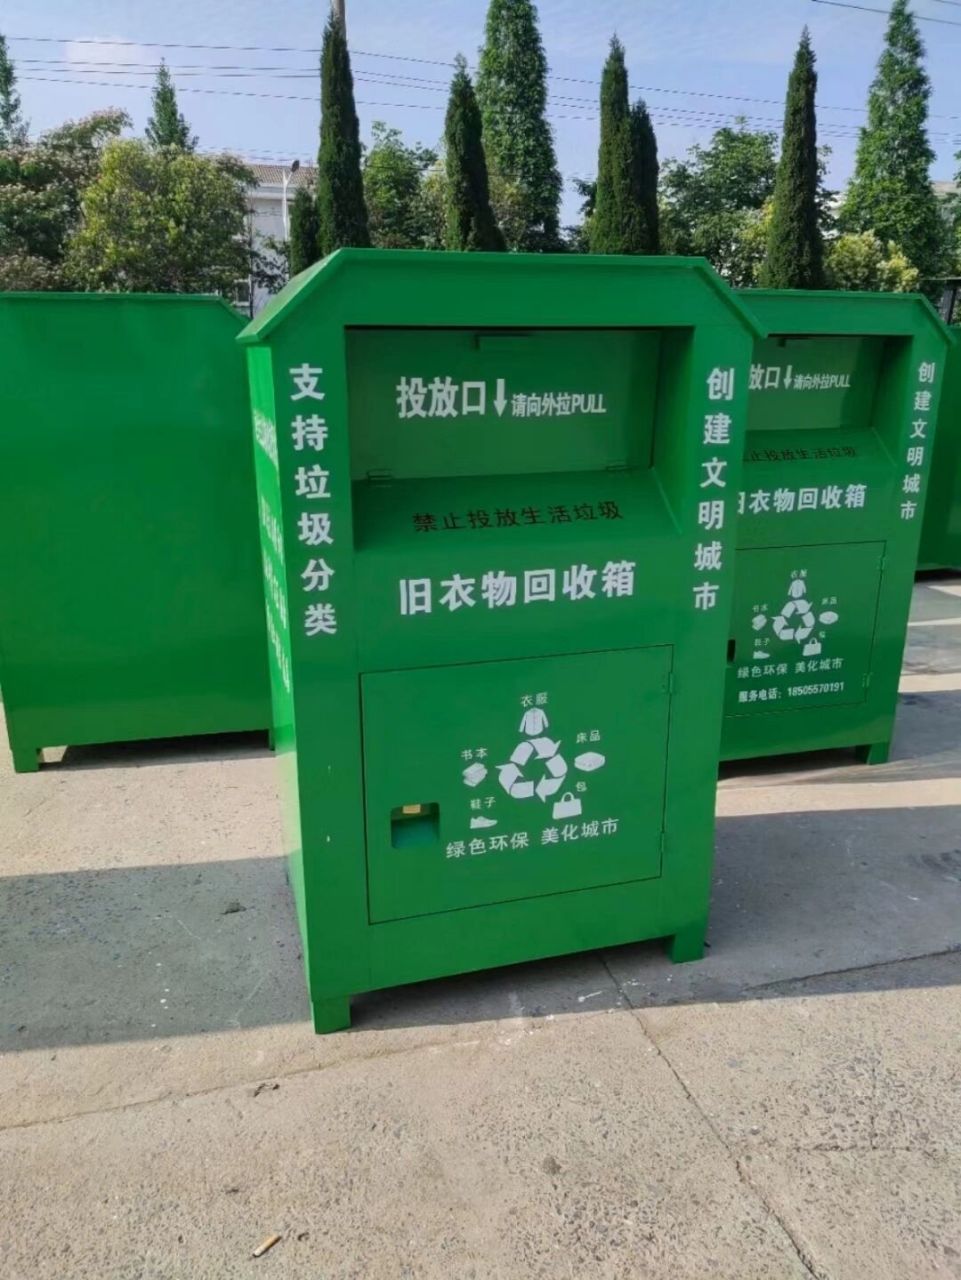 旧衣回收箱爱心回收箱可回收物箱可收回垃圾 旧衣回收箱爱心回收箱可